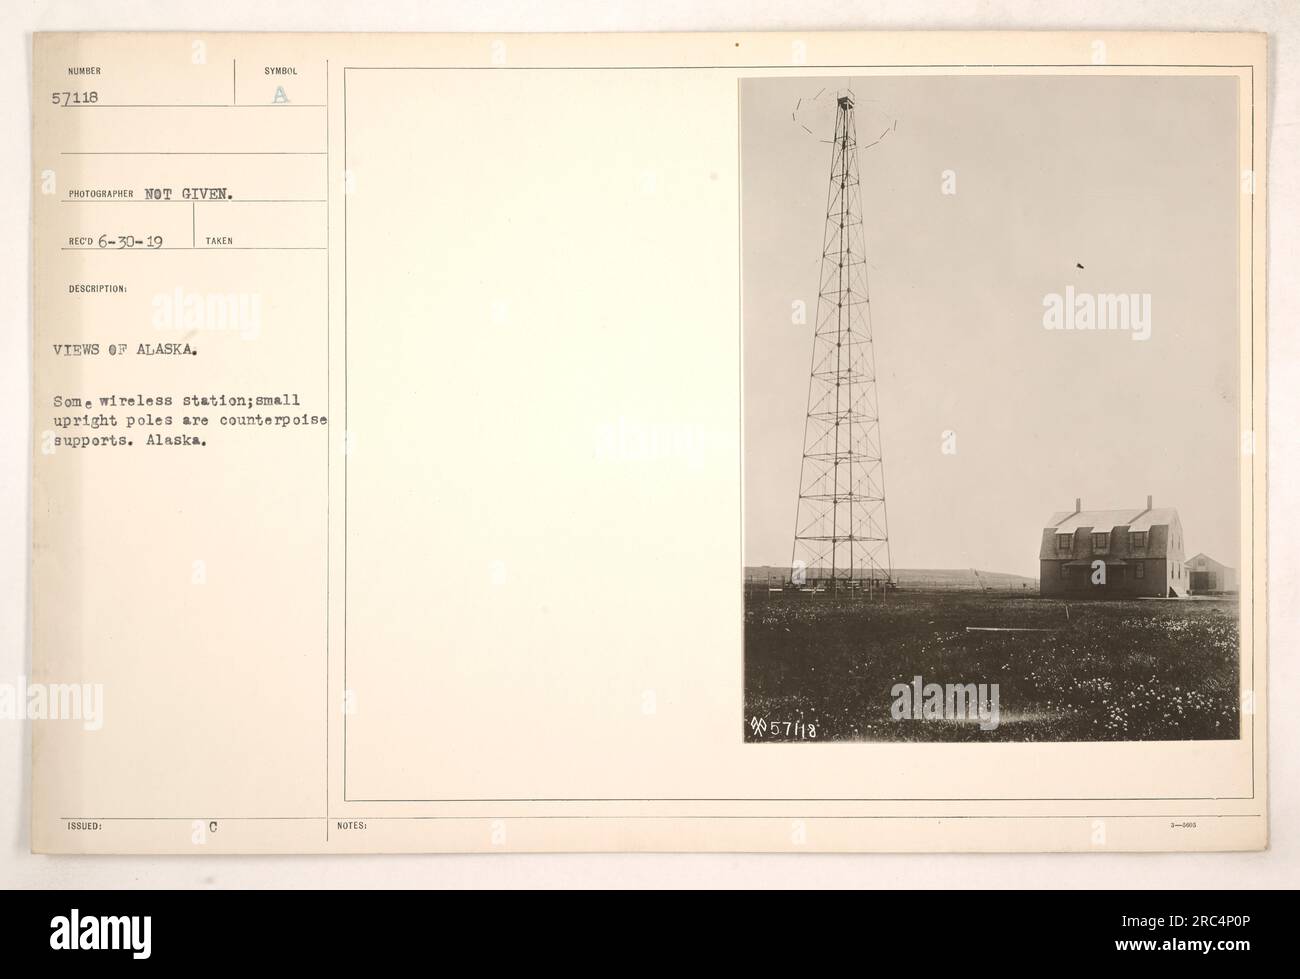 Questa fotografia mostra una stazione wireless in Alaska durante la prima guerra mondiale La stazione è composta da piccoli pali verticali che fungono da supporti contrappeso. Questa immagine fa parte di una serie che documenta le attività militari in Alaska durante questo periodo di tempo. Foto Stock